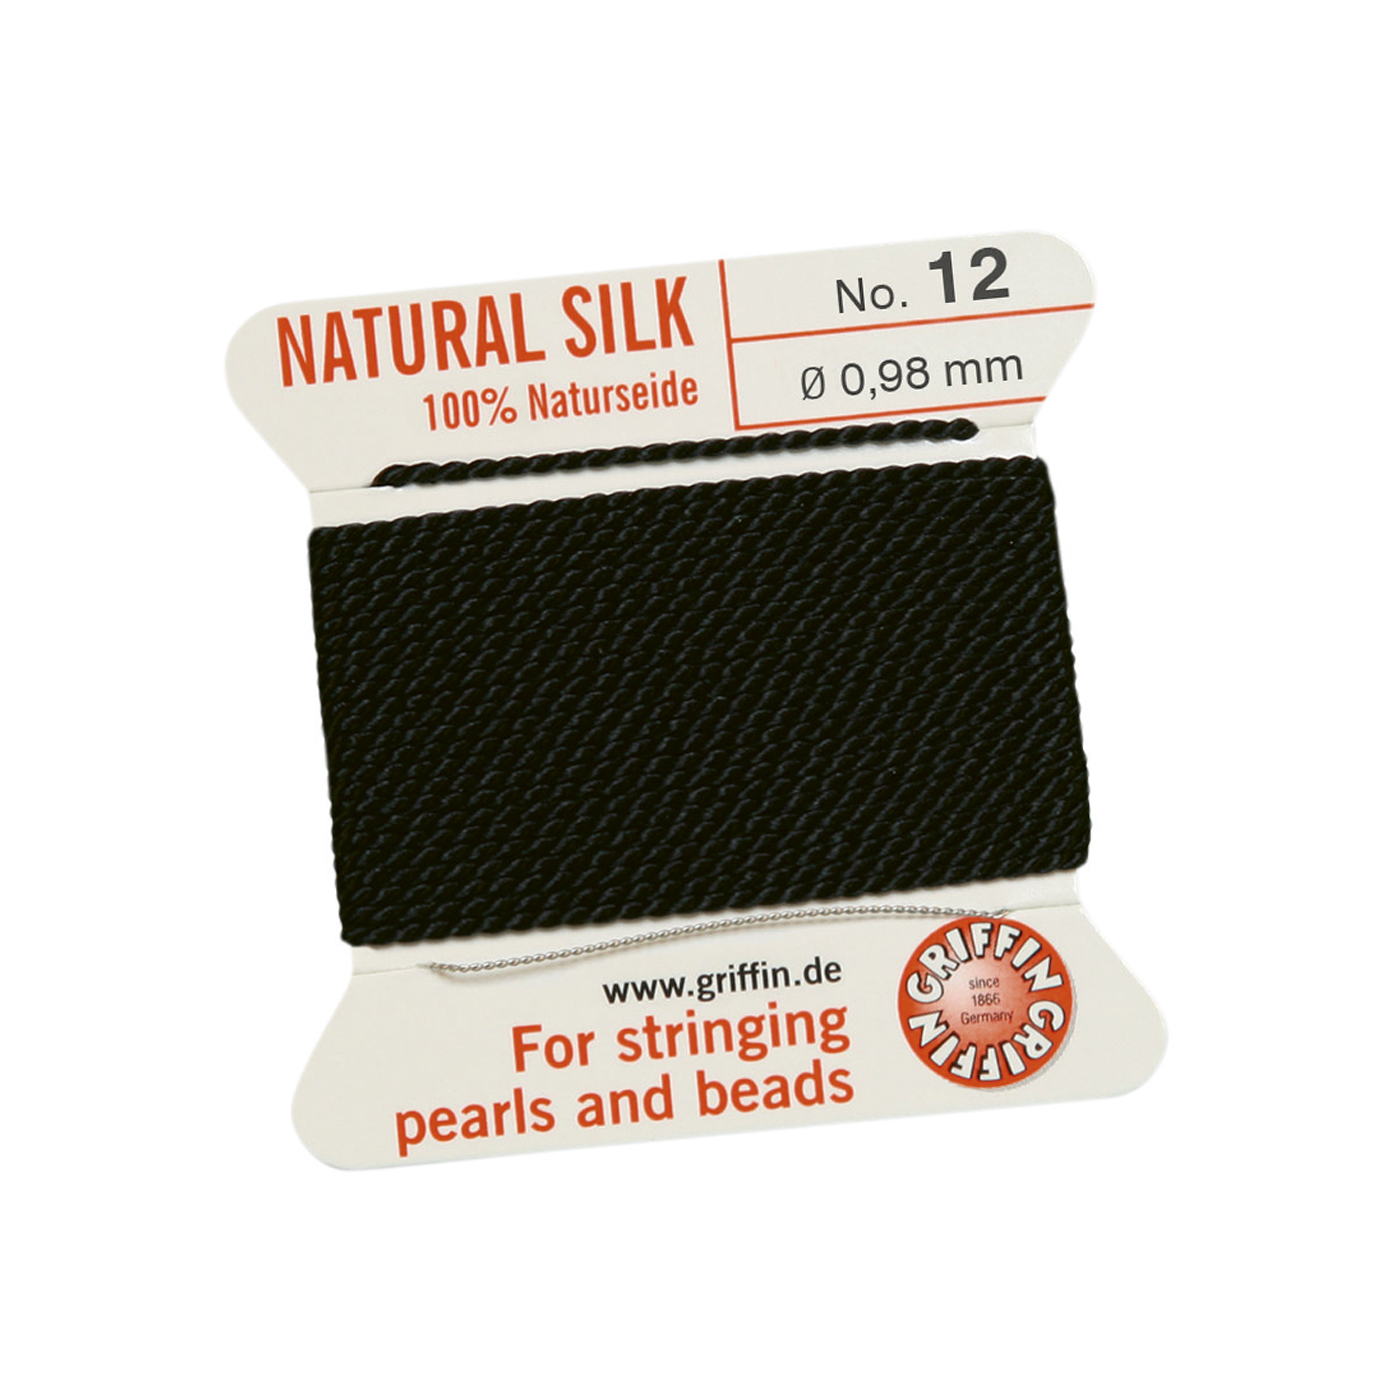 Bead Cord 100% Natural Silk, Black, No. 12 - 2 m